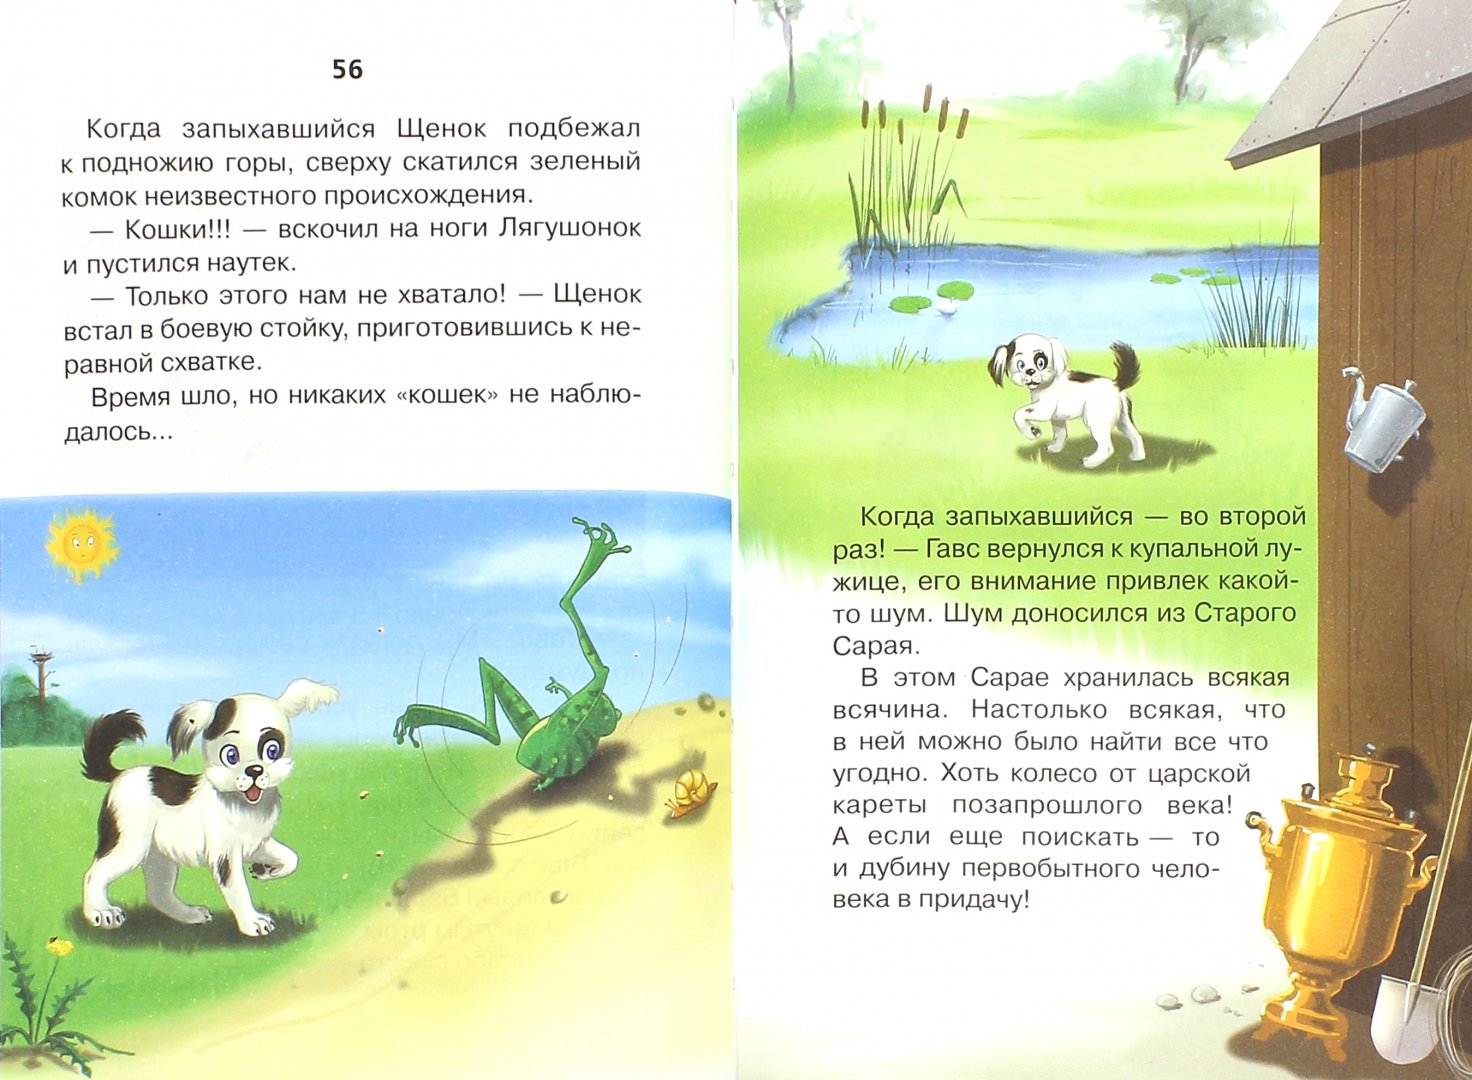 Иллюстрация 1 из 11 для Ктототам-Попятам - Игорь Шевчук | Лабиринт - книги. Источник: Лабиринт